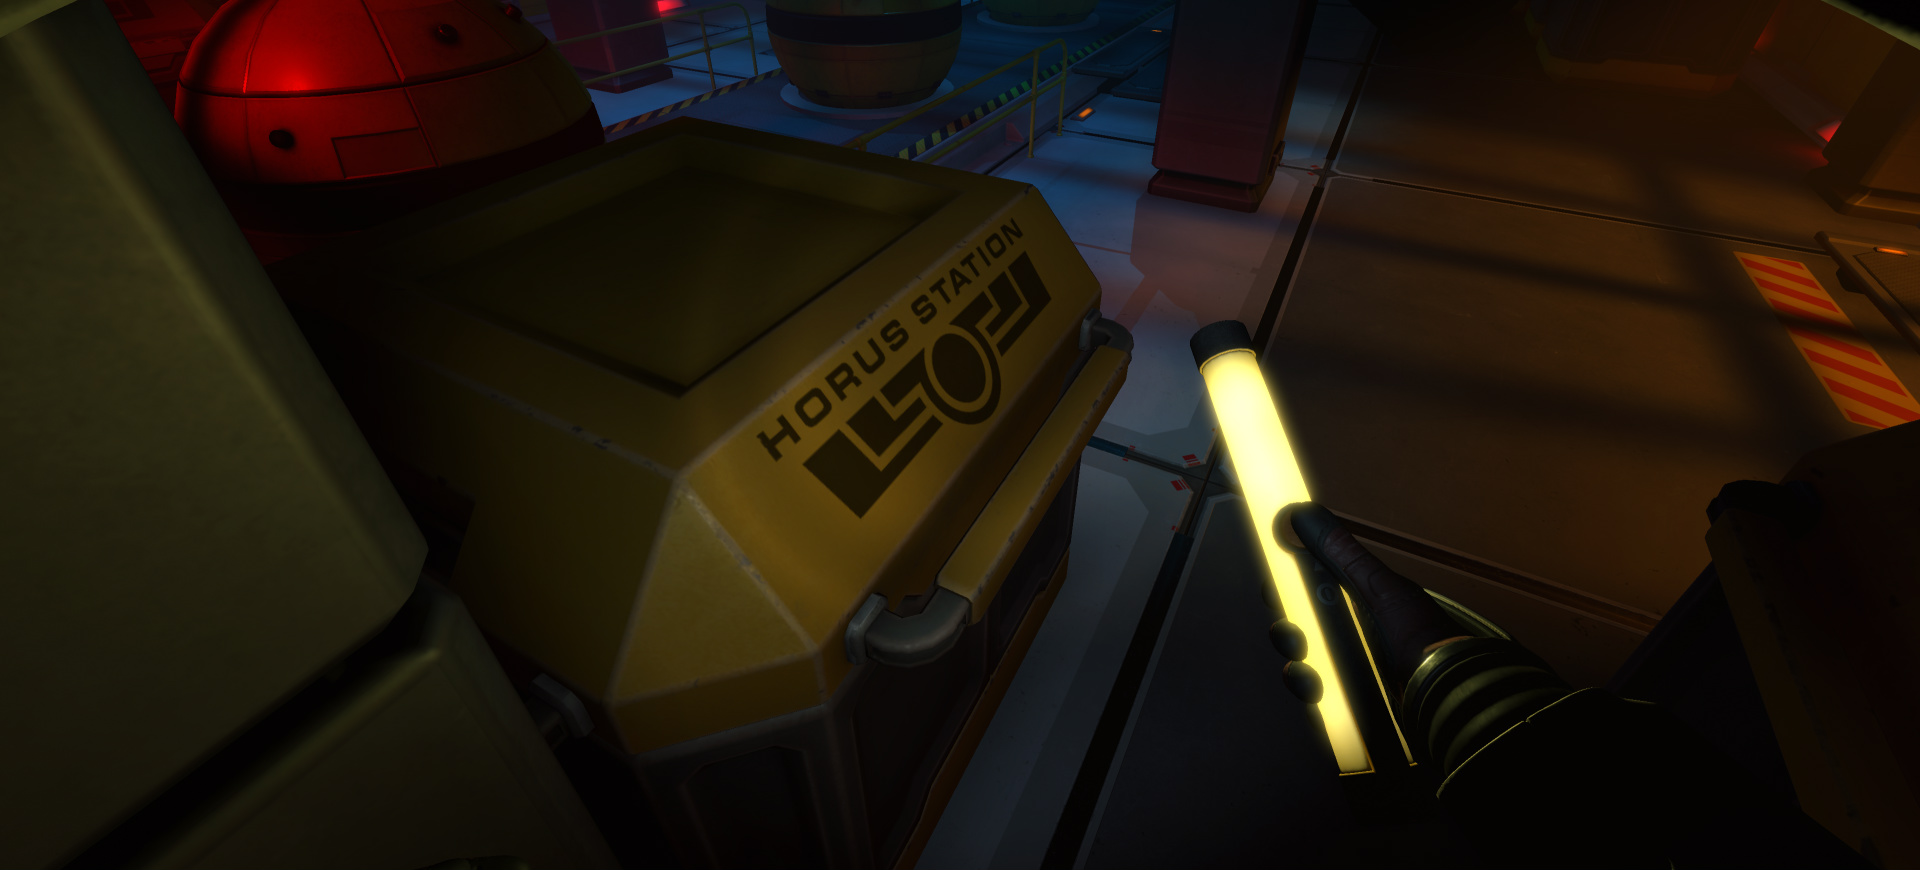 Downward Spiral: Horus Station hẹn người chơi khám phá trạm không gian vào cuối tháng 5 này – Tin Game